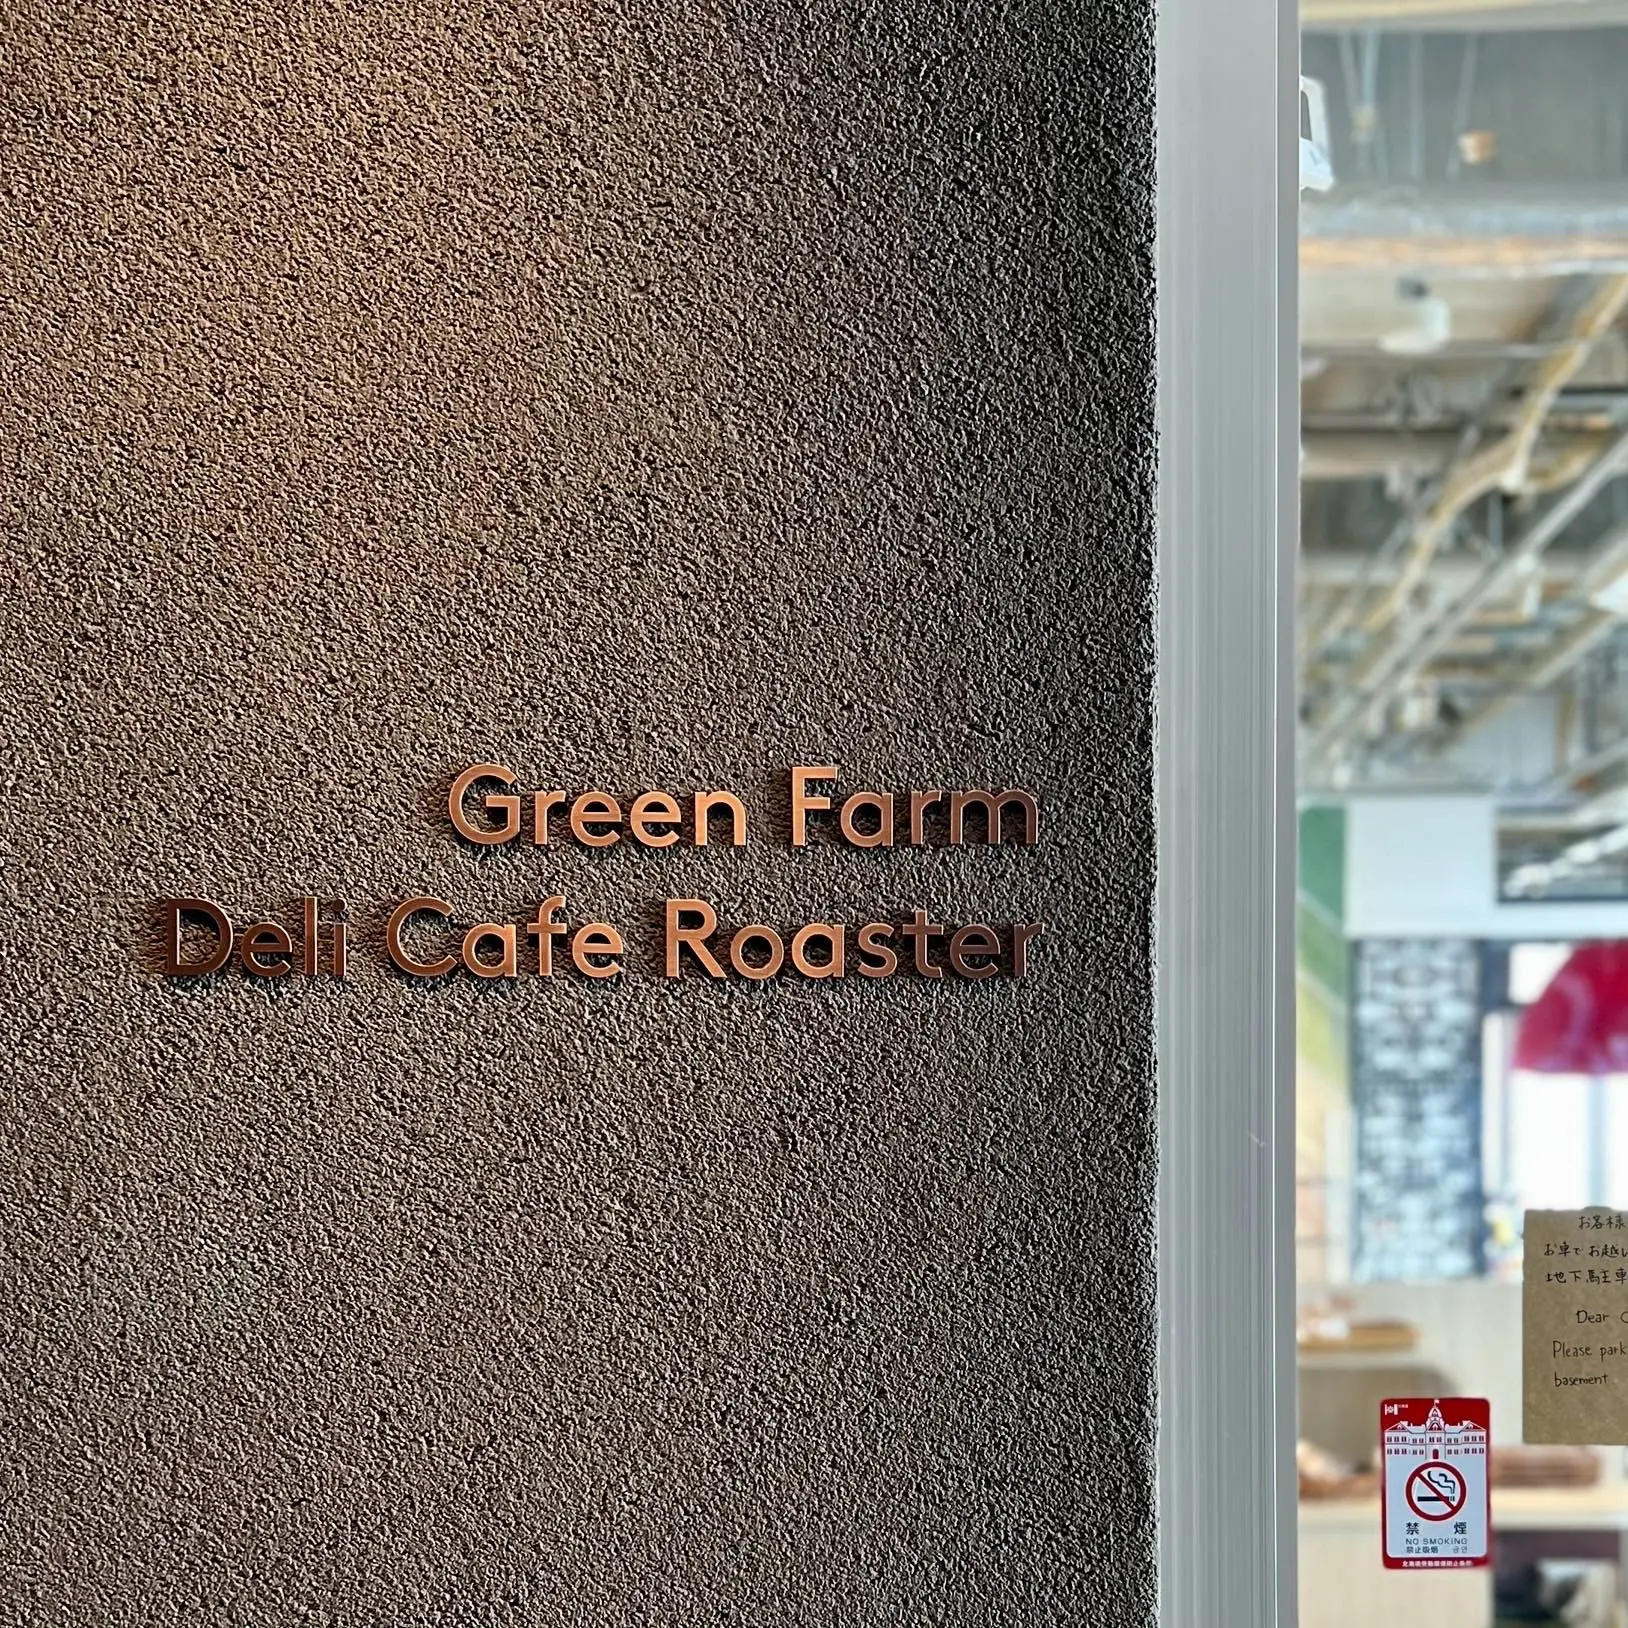 ニセコのカフェ「Green Farm Cafe」の看板